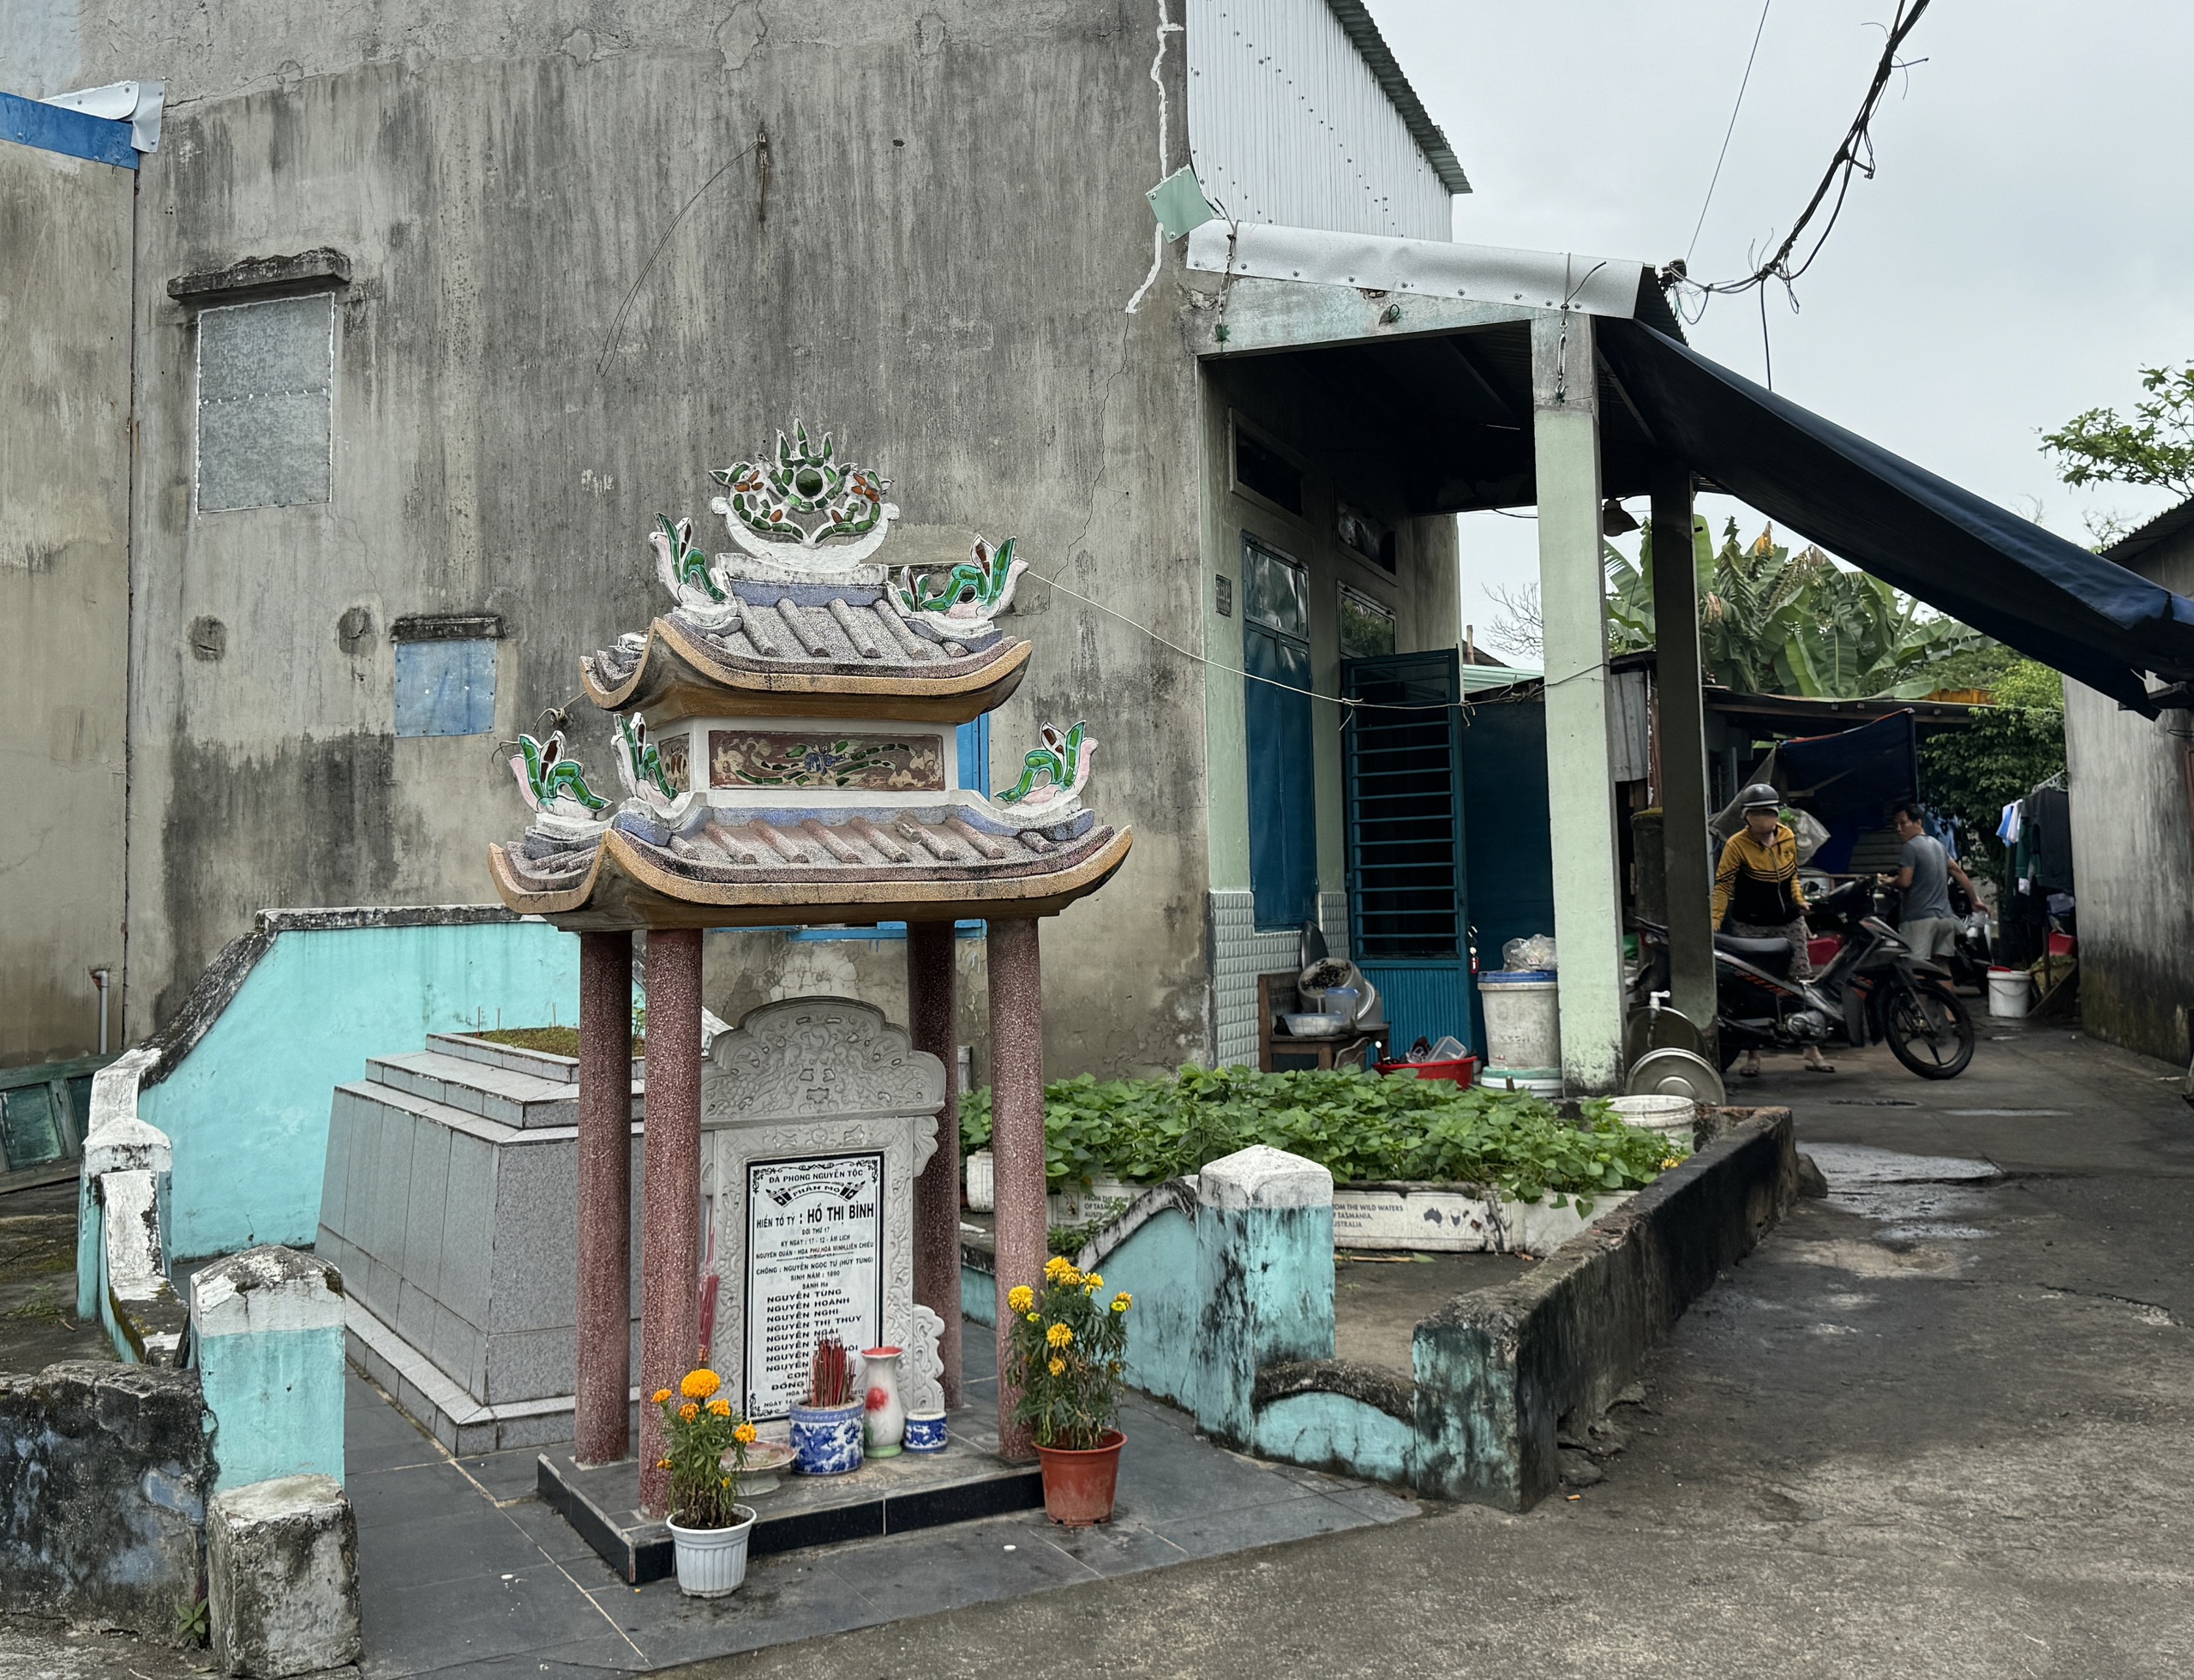 Ớn lạnh cảnh khu dân cư xen lẫn hàng ngàn ngôi mộ ở Đà Nẵng- Ảnh 9.